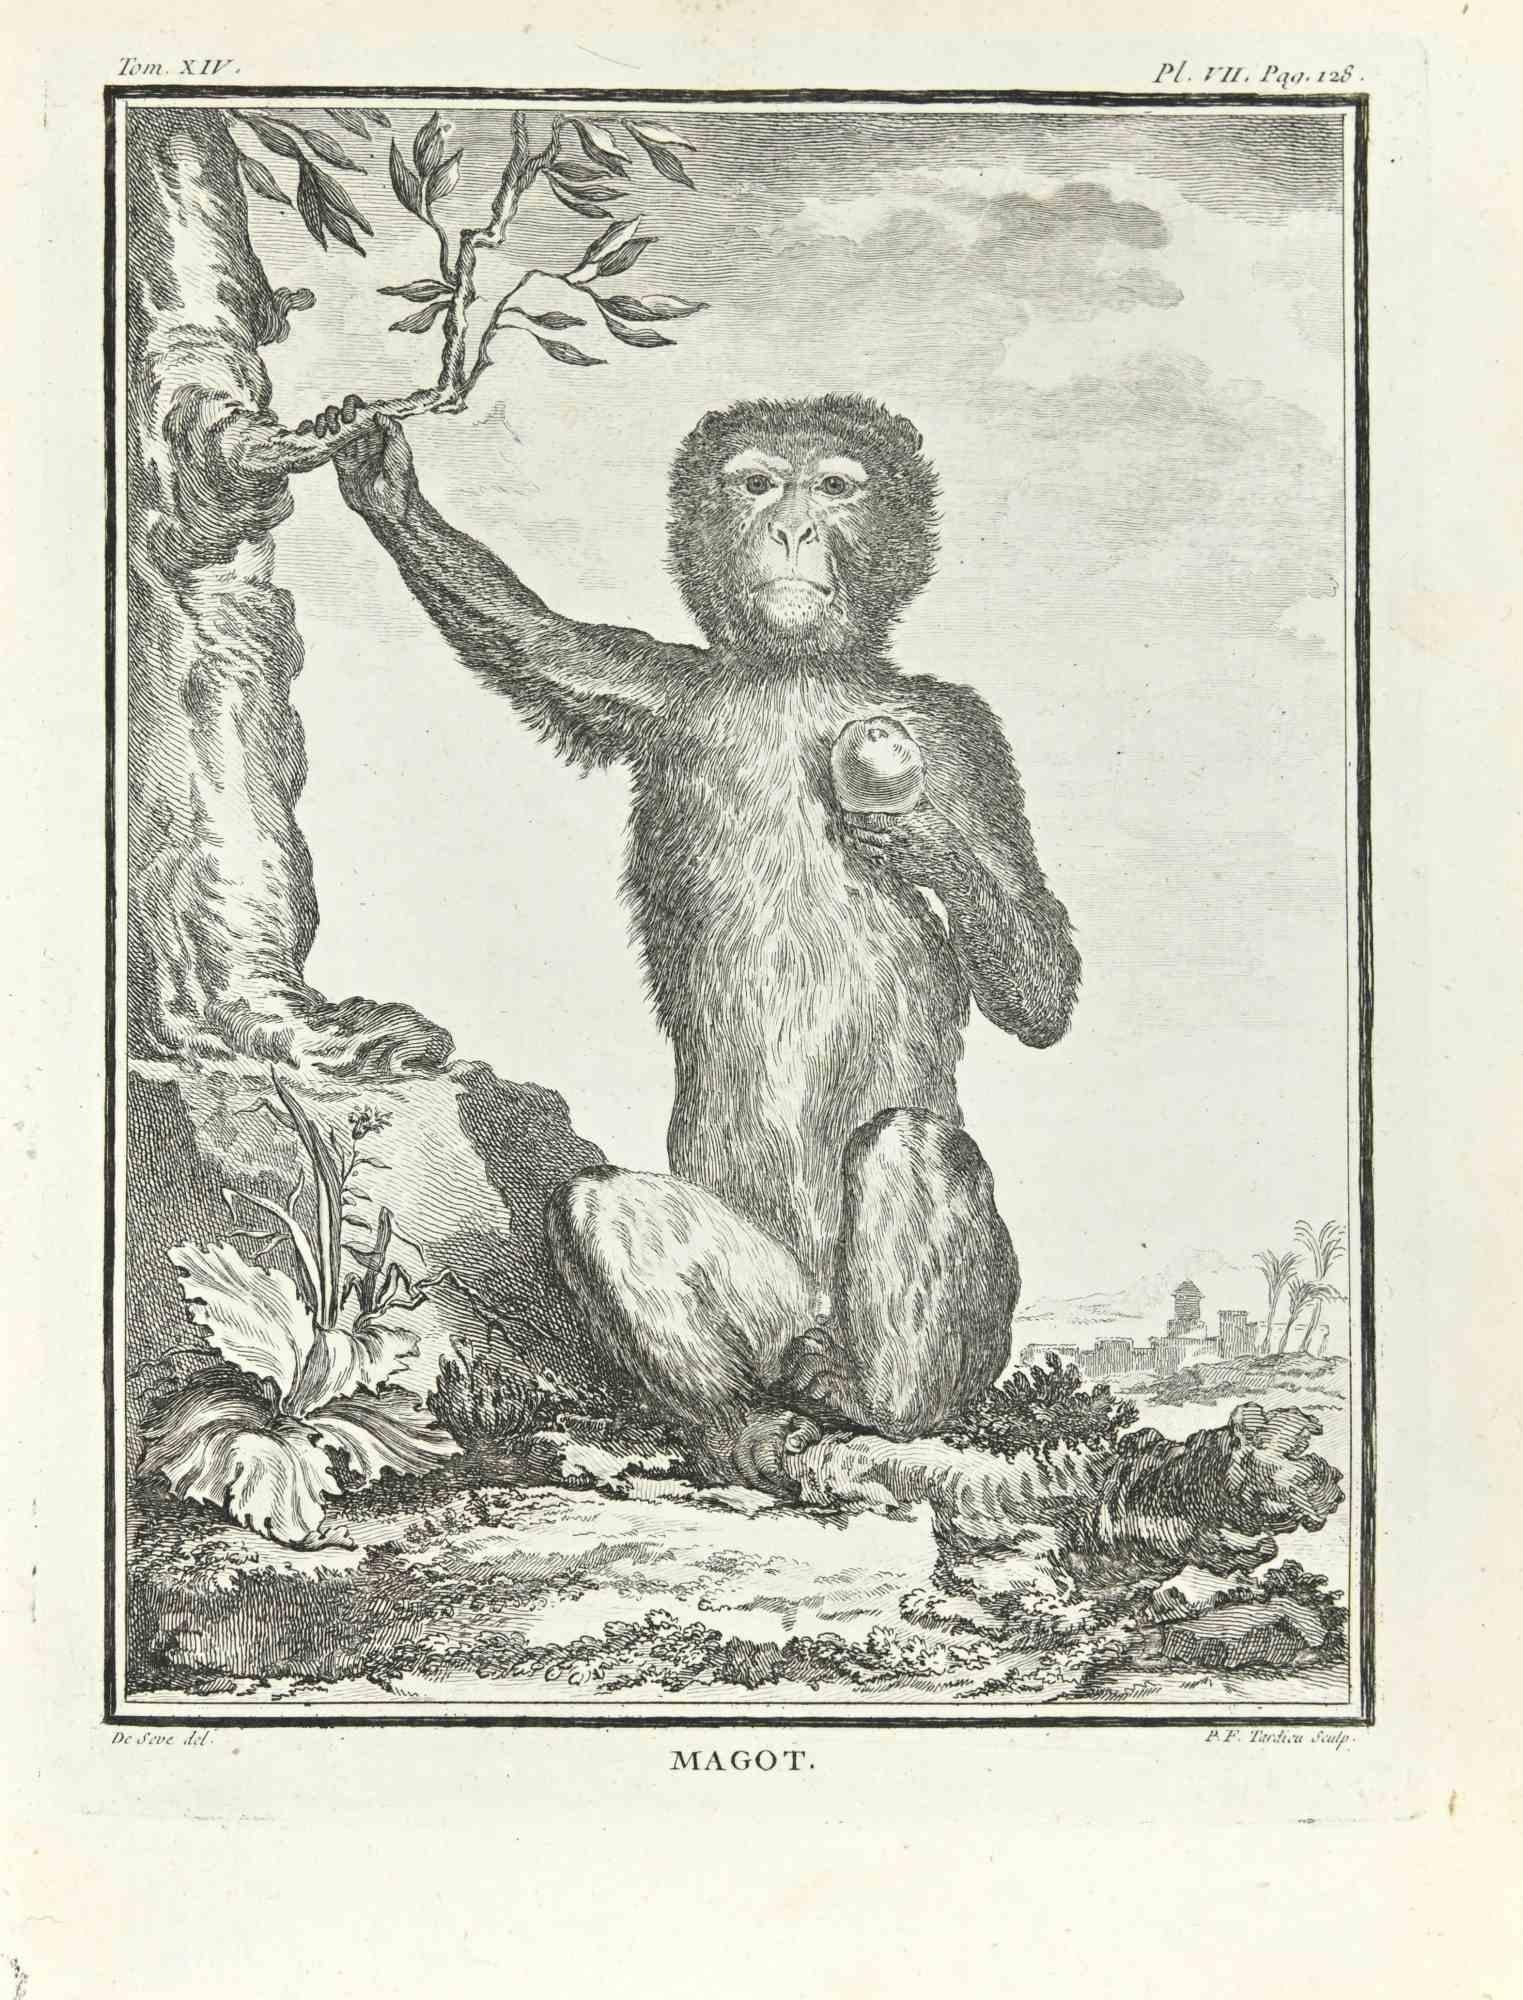 Magot ist eine Radierung von Pierre Francois Tardieu aus dem Jahr 1771.

Es gehört zu der Reihe "Histoire Naturelle de Buffon".

Die Signatur des Künstlers ist unten rechts eingraviert.

Gute Bedingungen